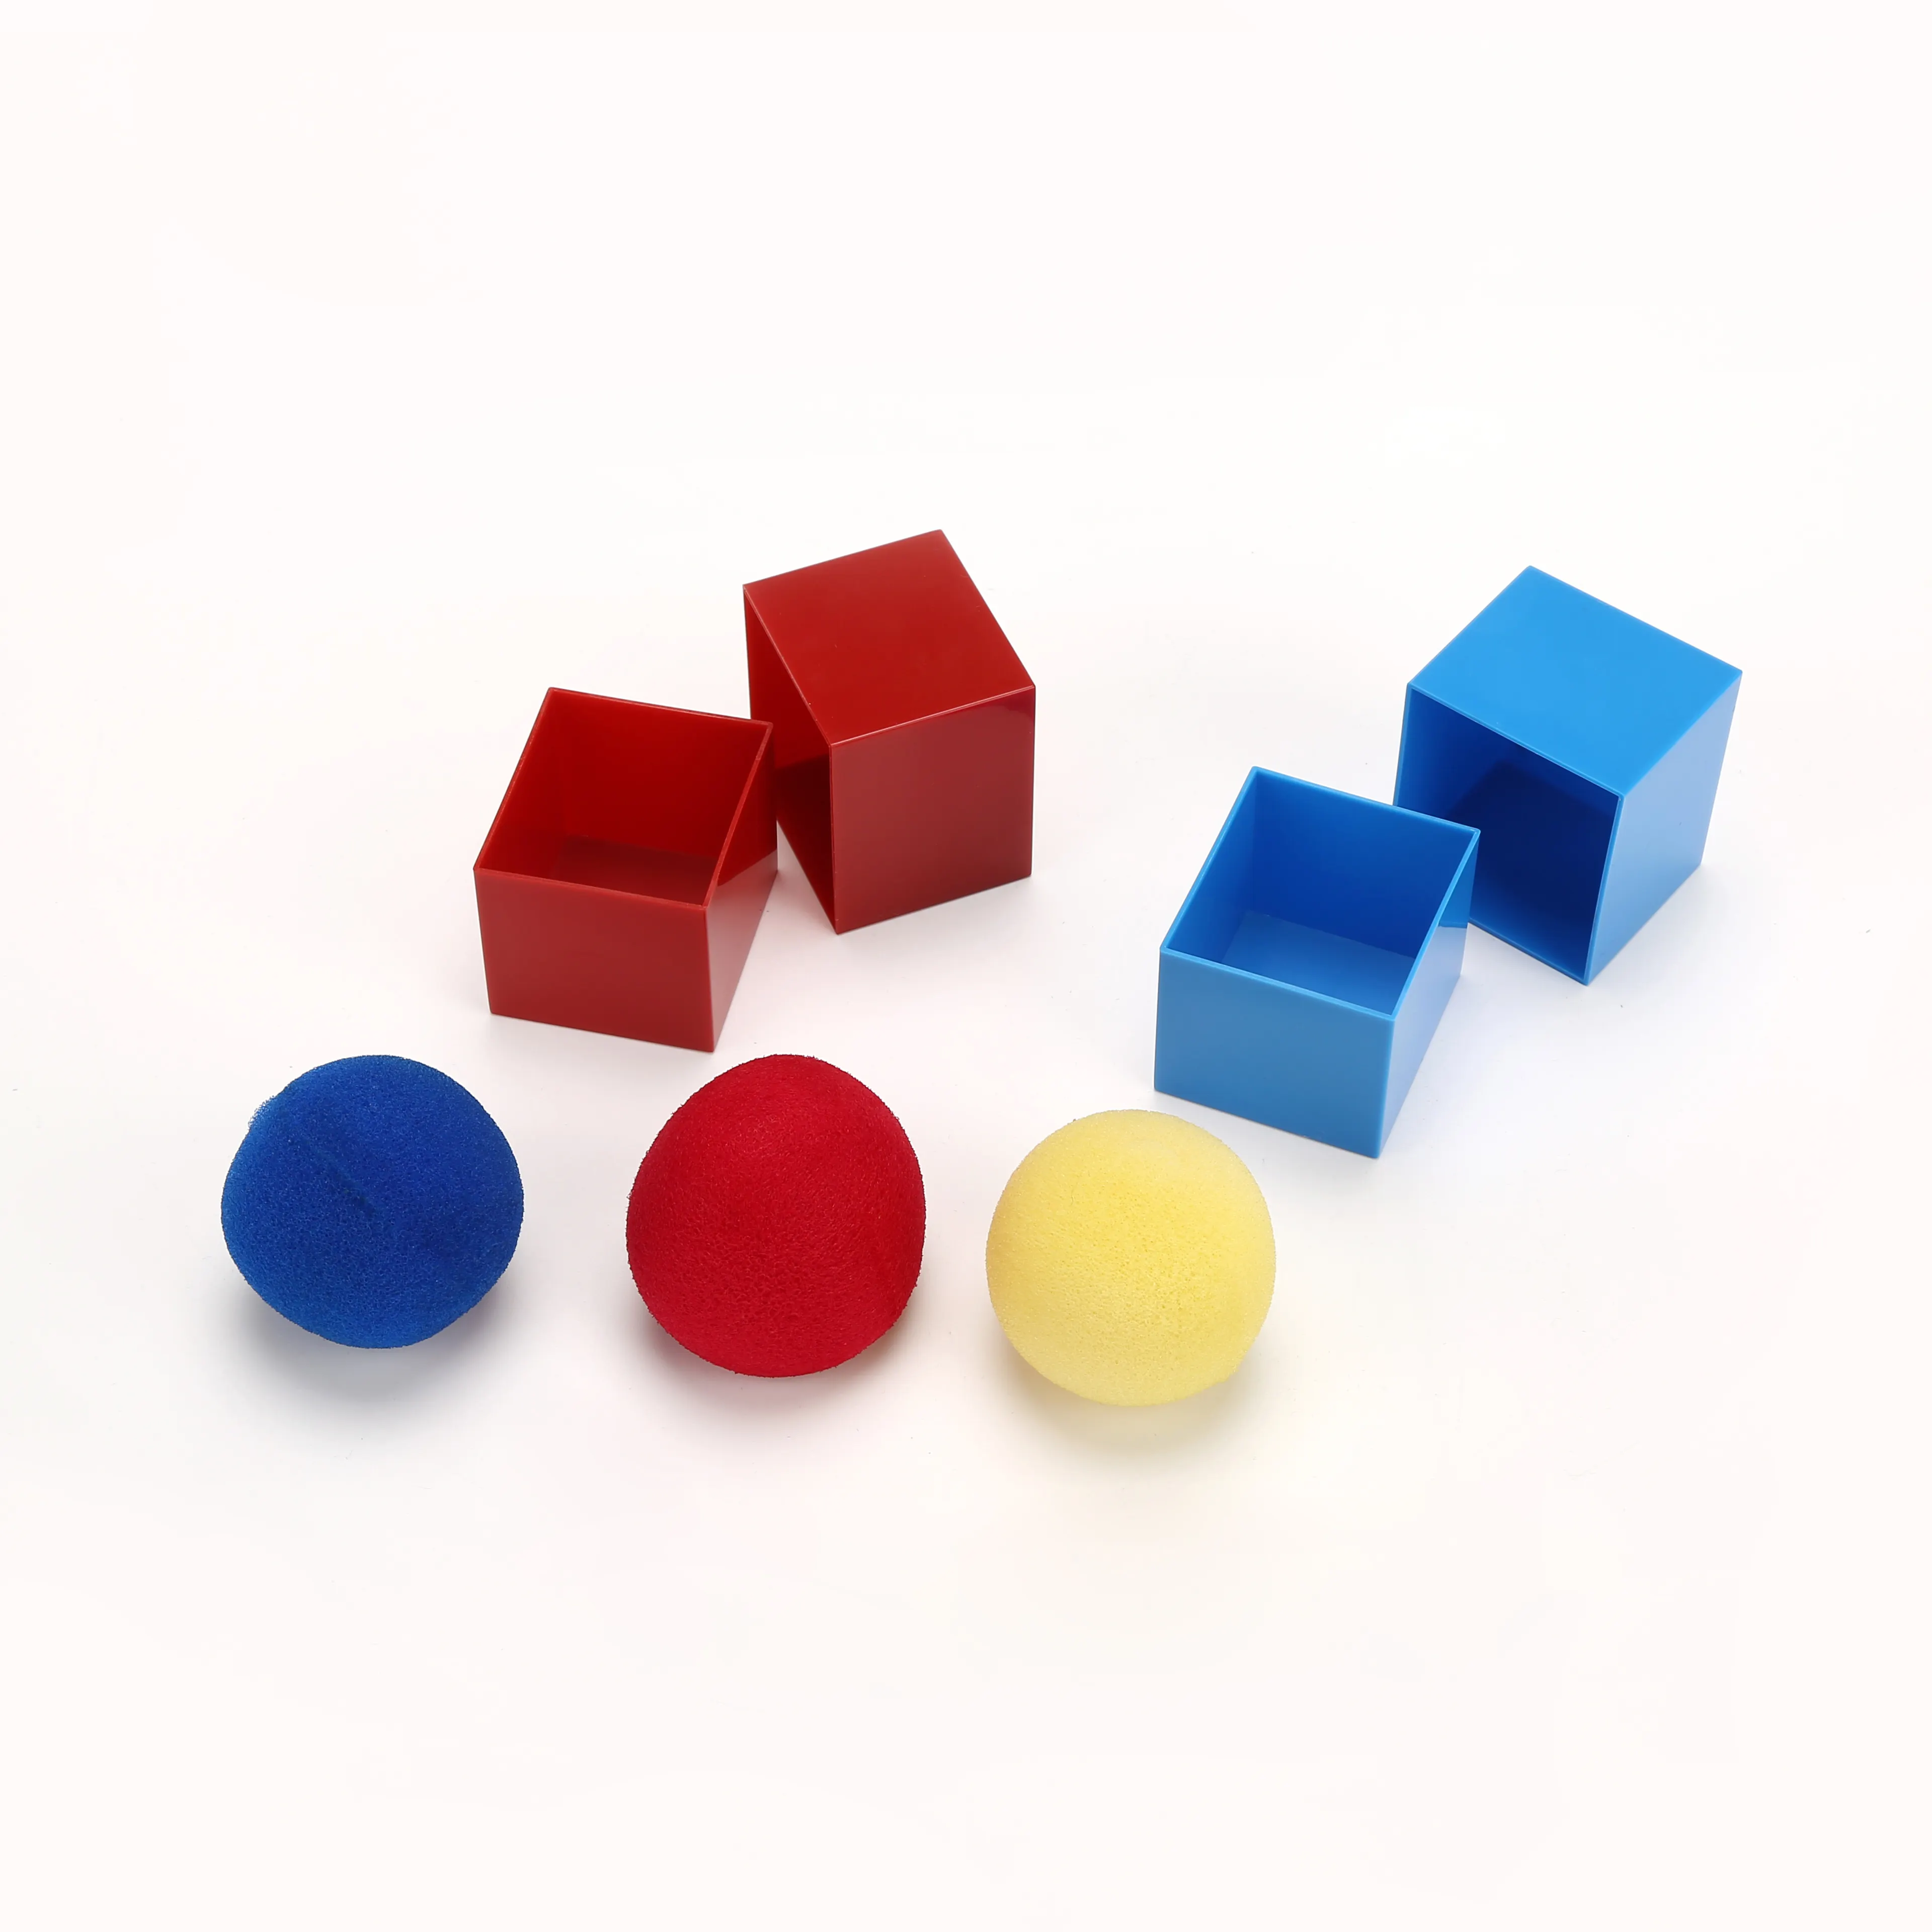 Truques Mágicos IN & OUT BALL BOX Truques Adereços Bolas De Brinquedo para Crianças